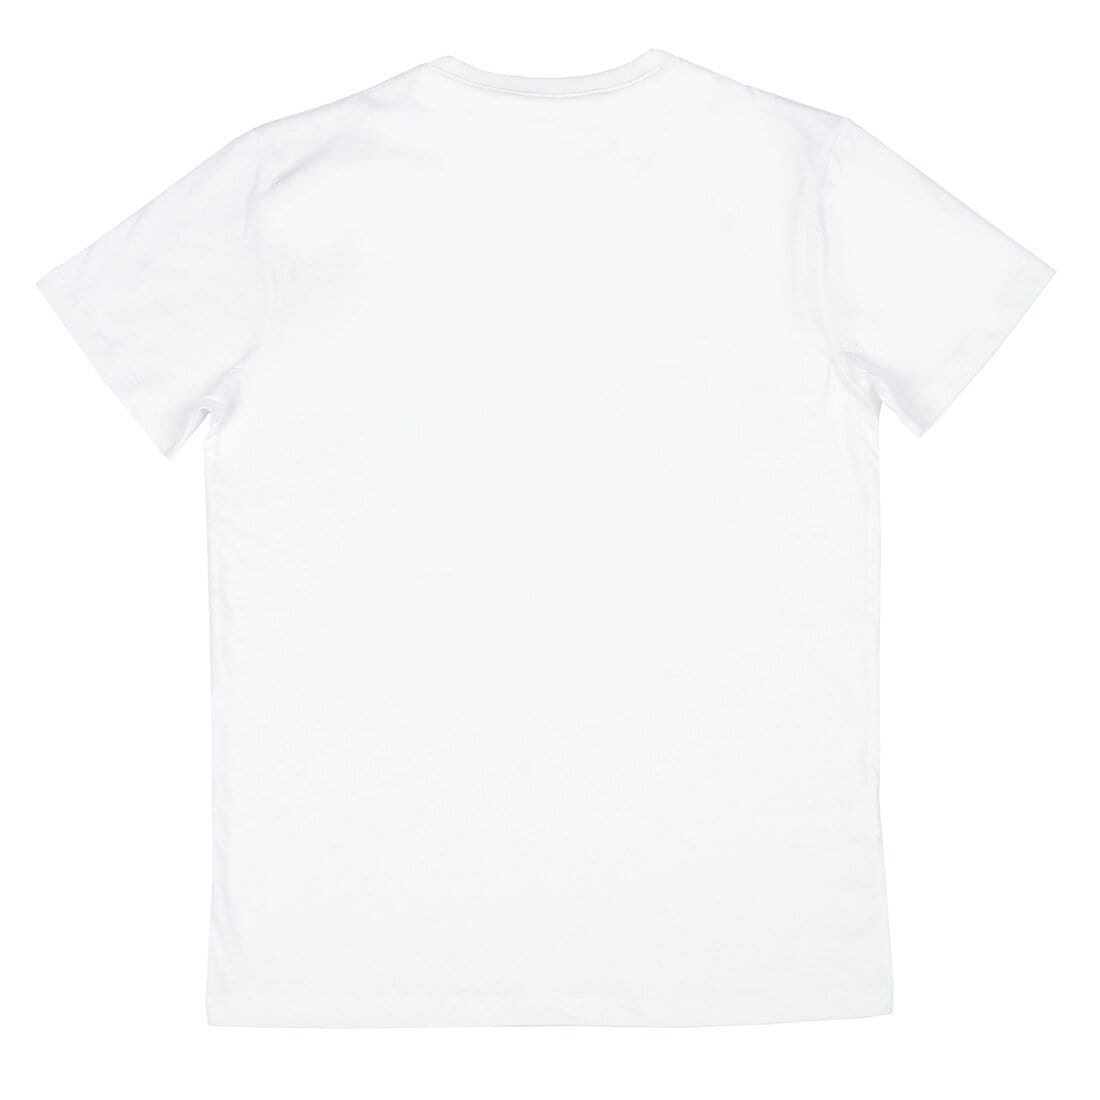 Mr Crimbo Mens Crew White Snowman Print Christmas T-Shirt - MrCrimbo.co.uk -VISMW06037WHT_A - S -crew tshirt